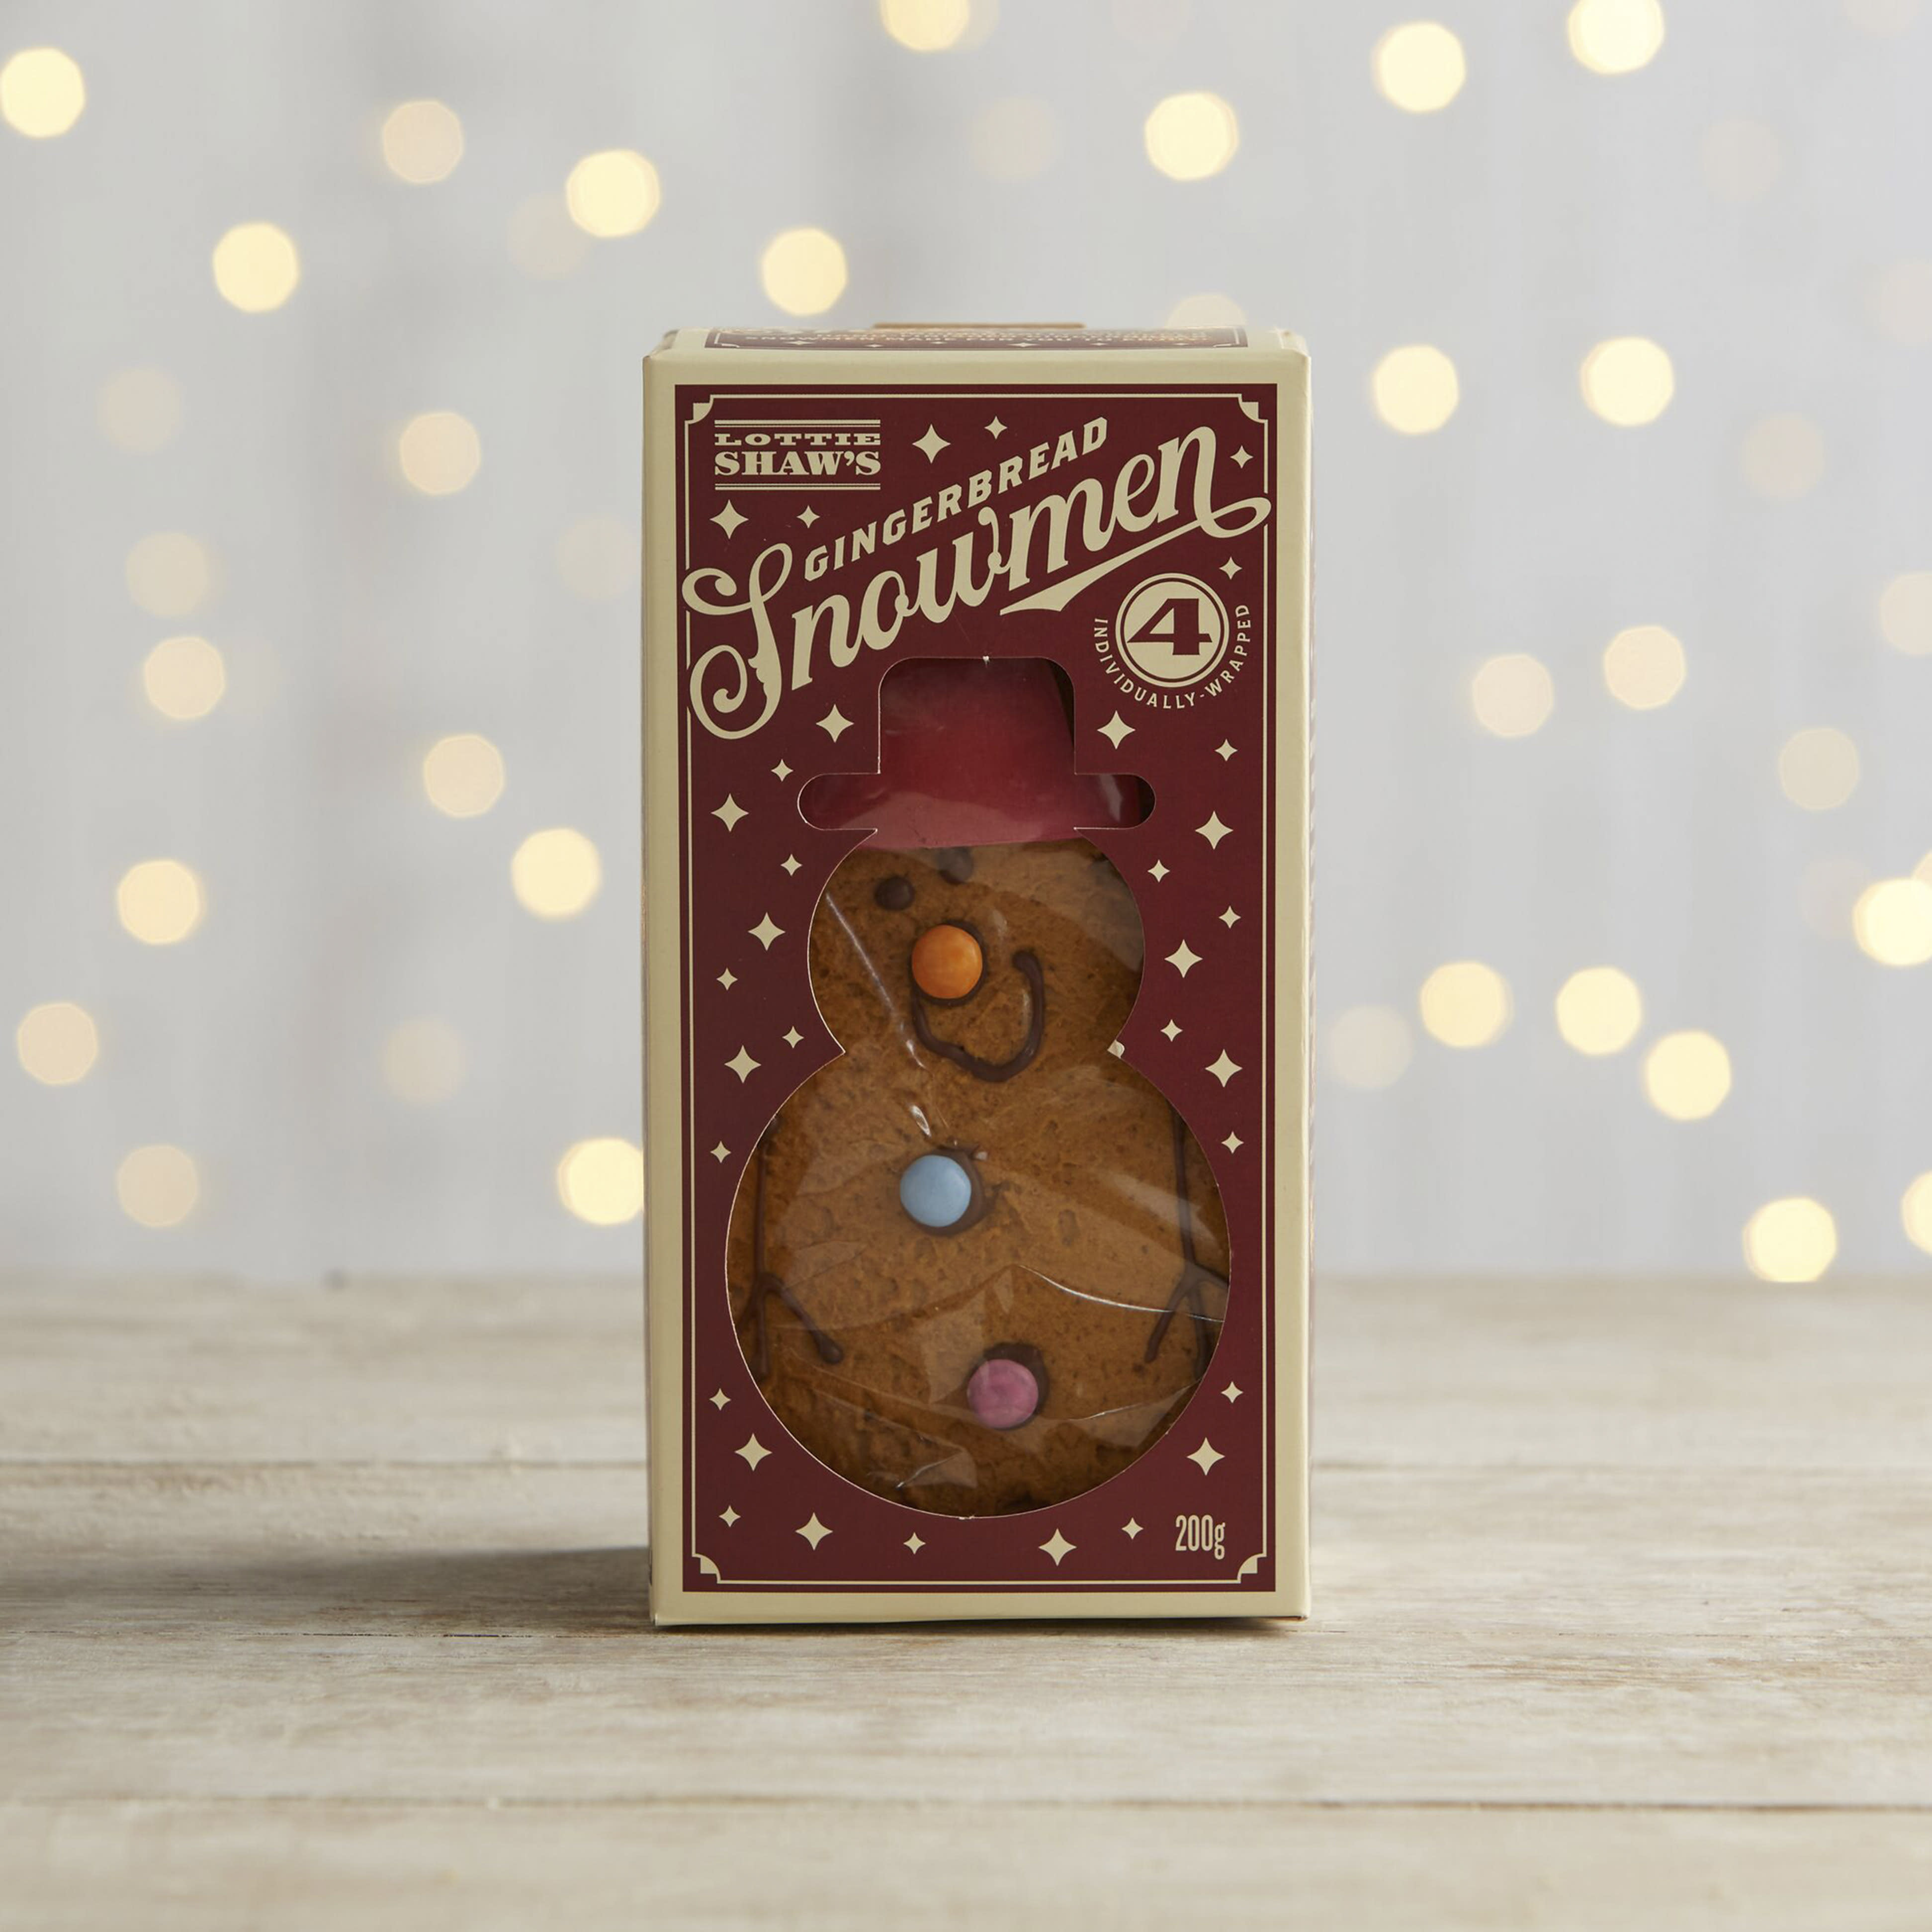 Lottie Shaw's Gingerbread Snowmen, 4 Pack